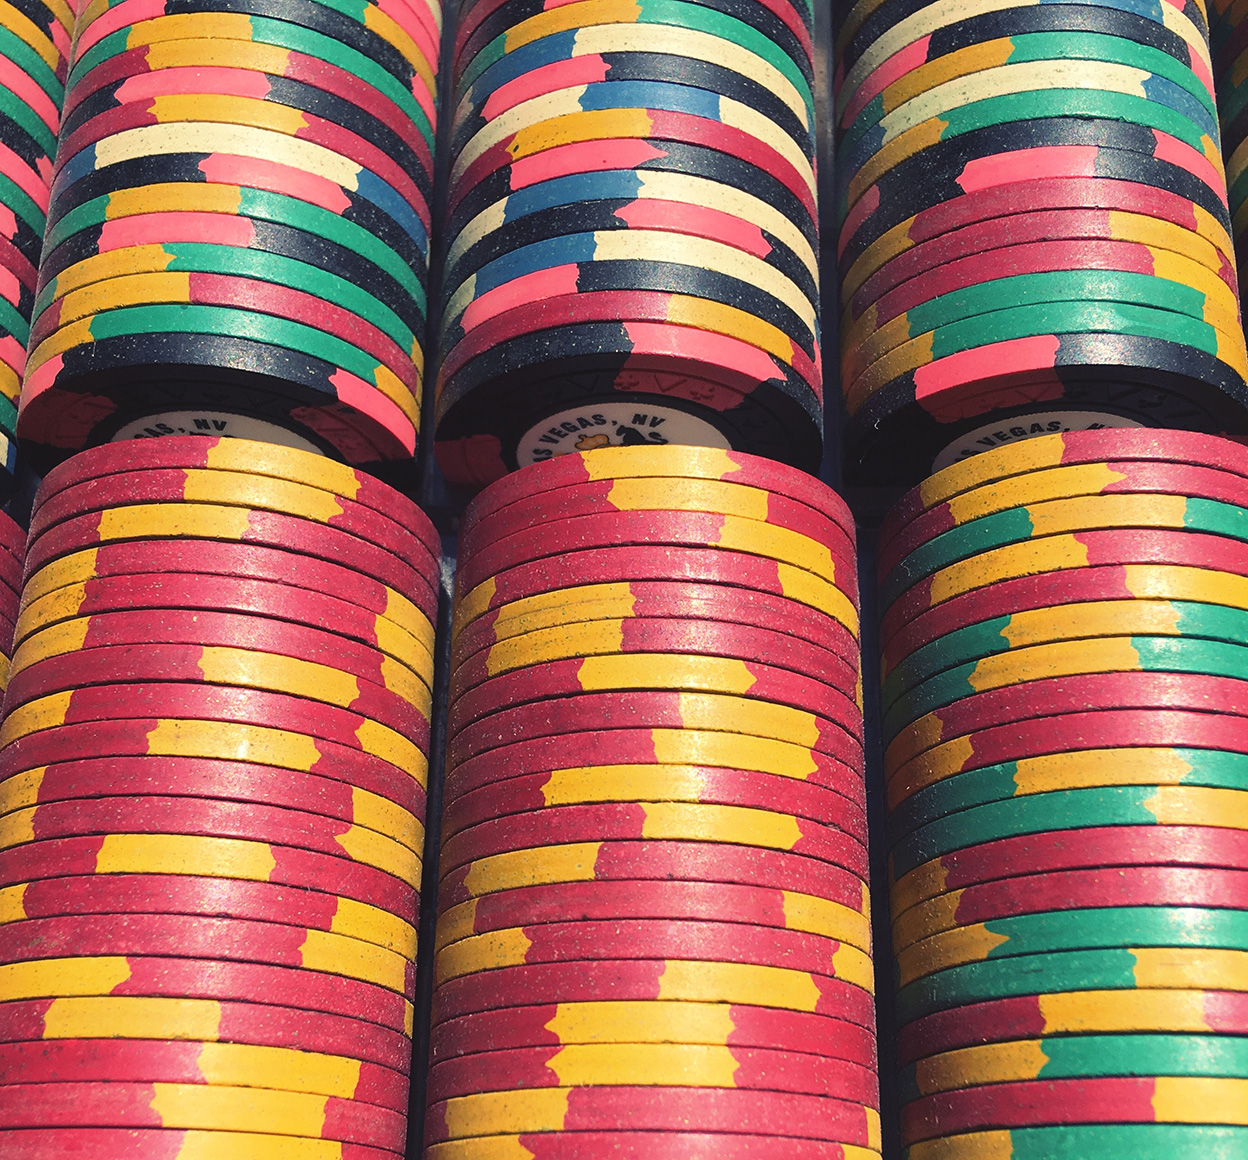 Stacks of poker chips